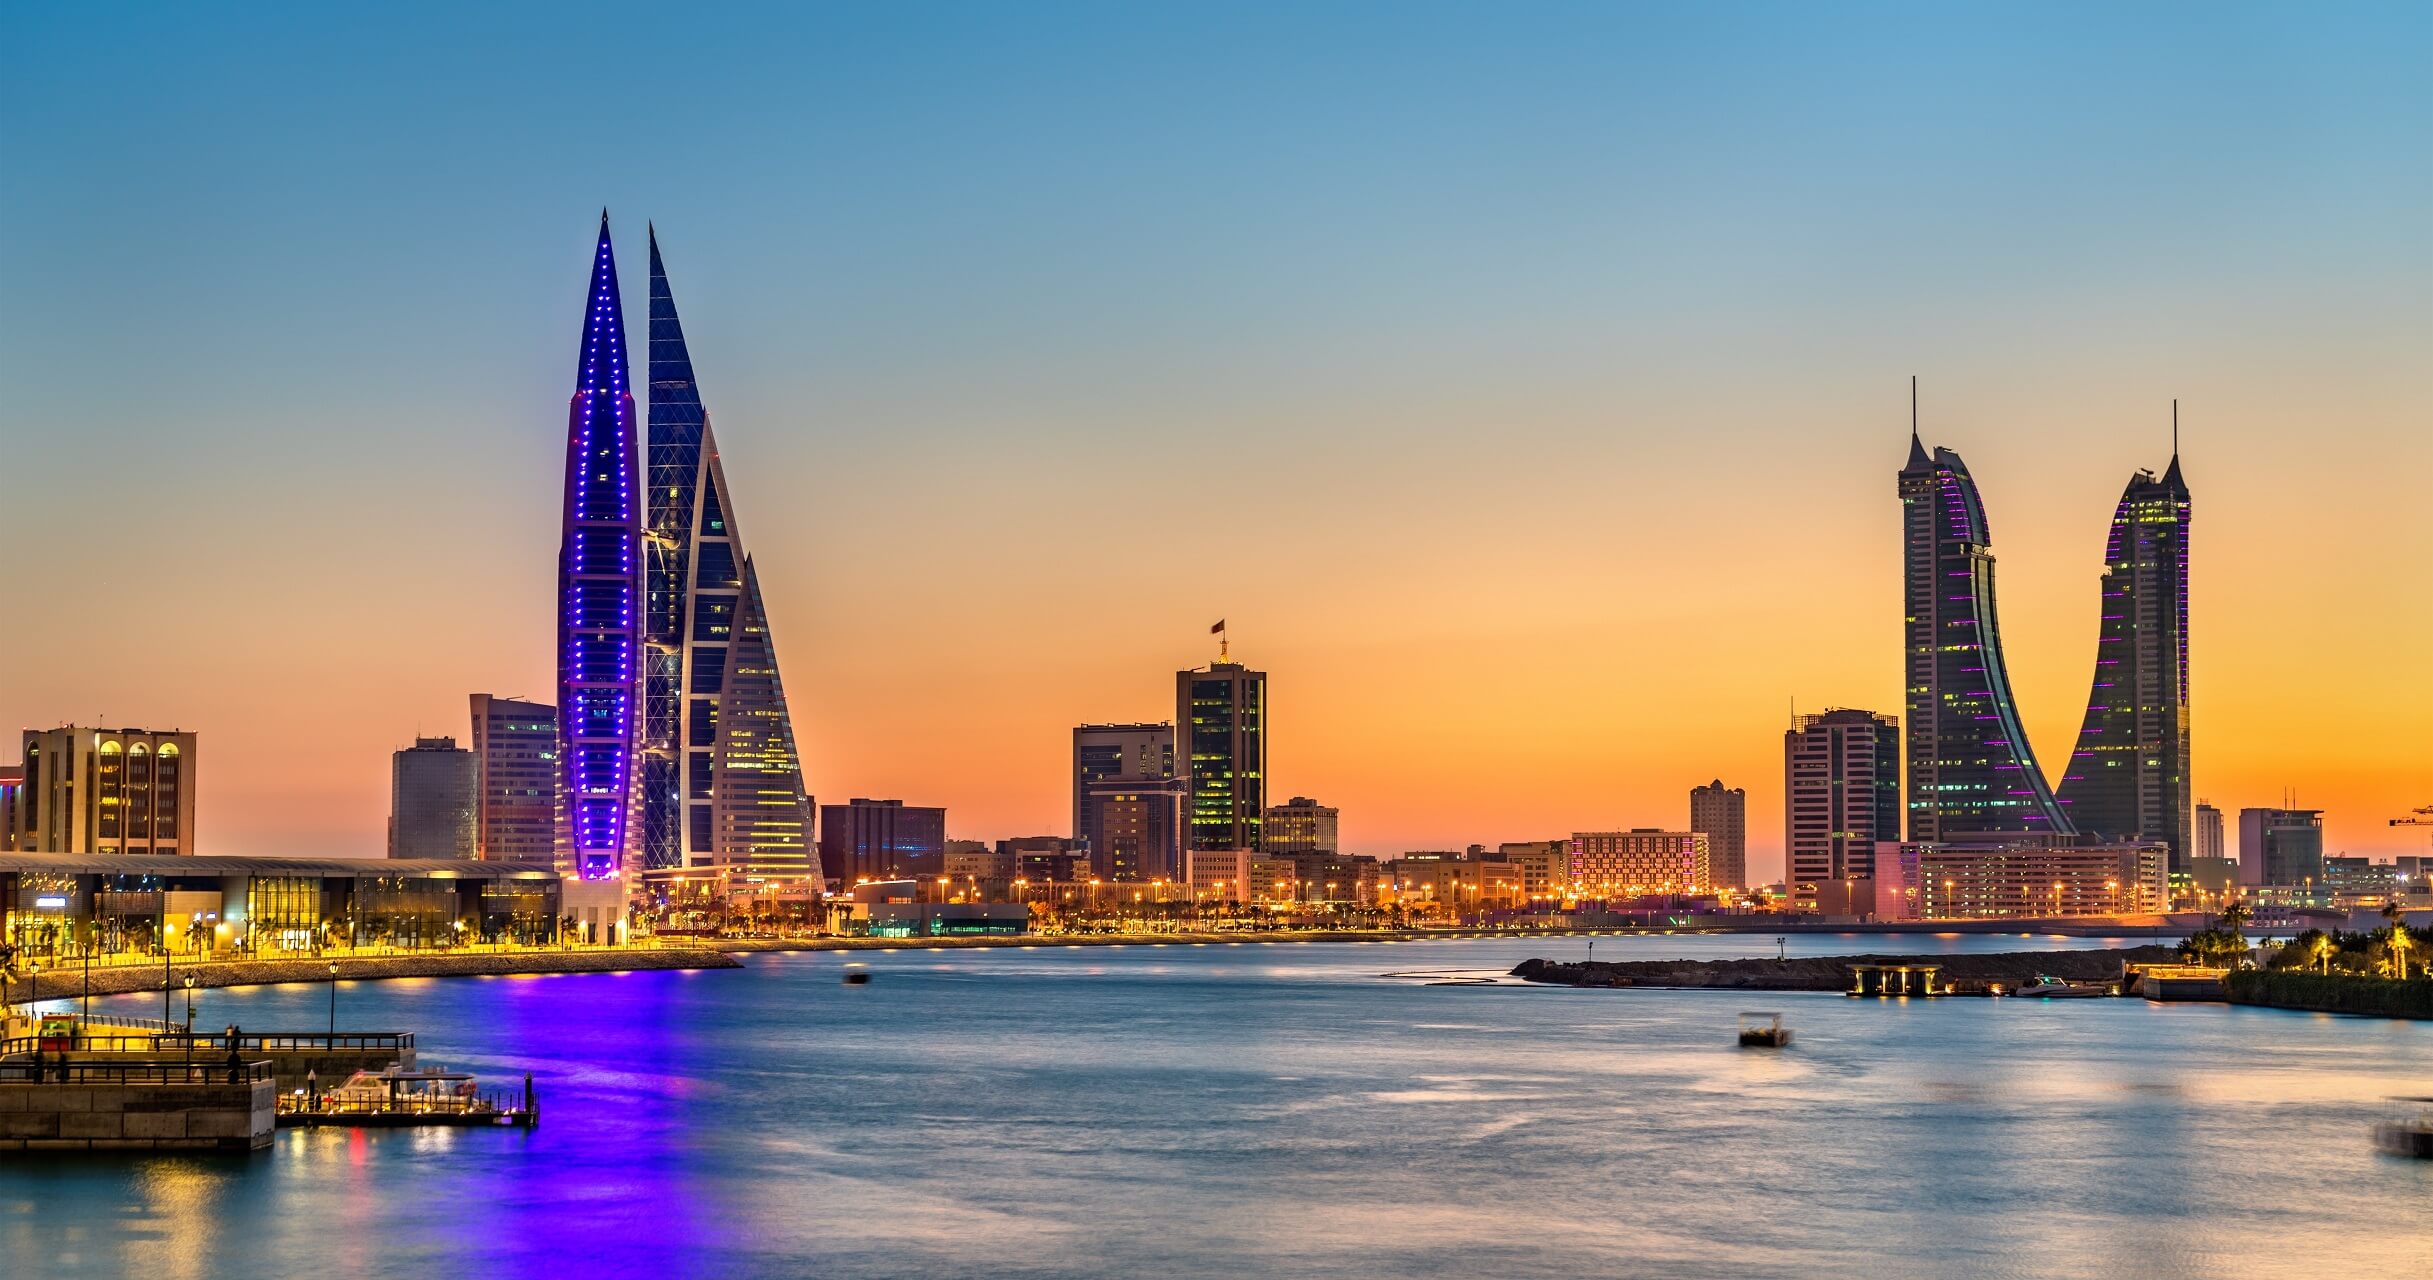 famous tourist places in bahrain